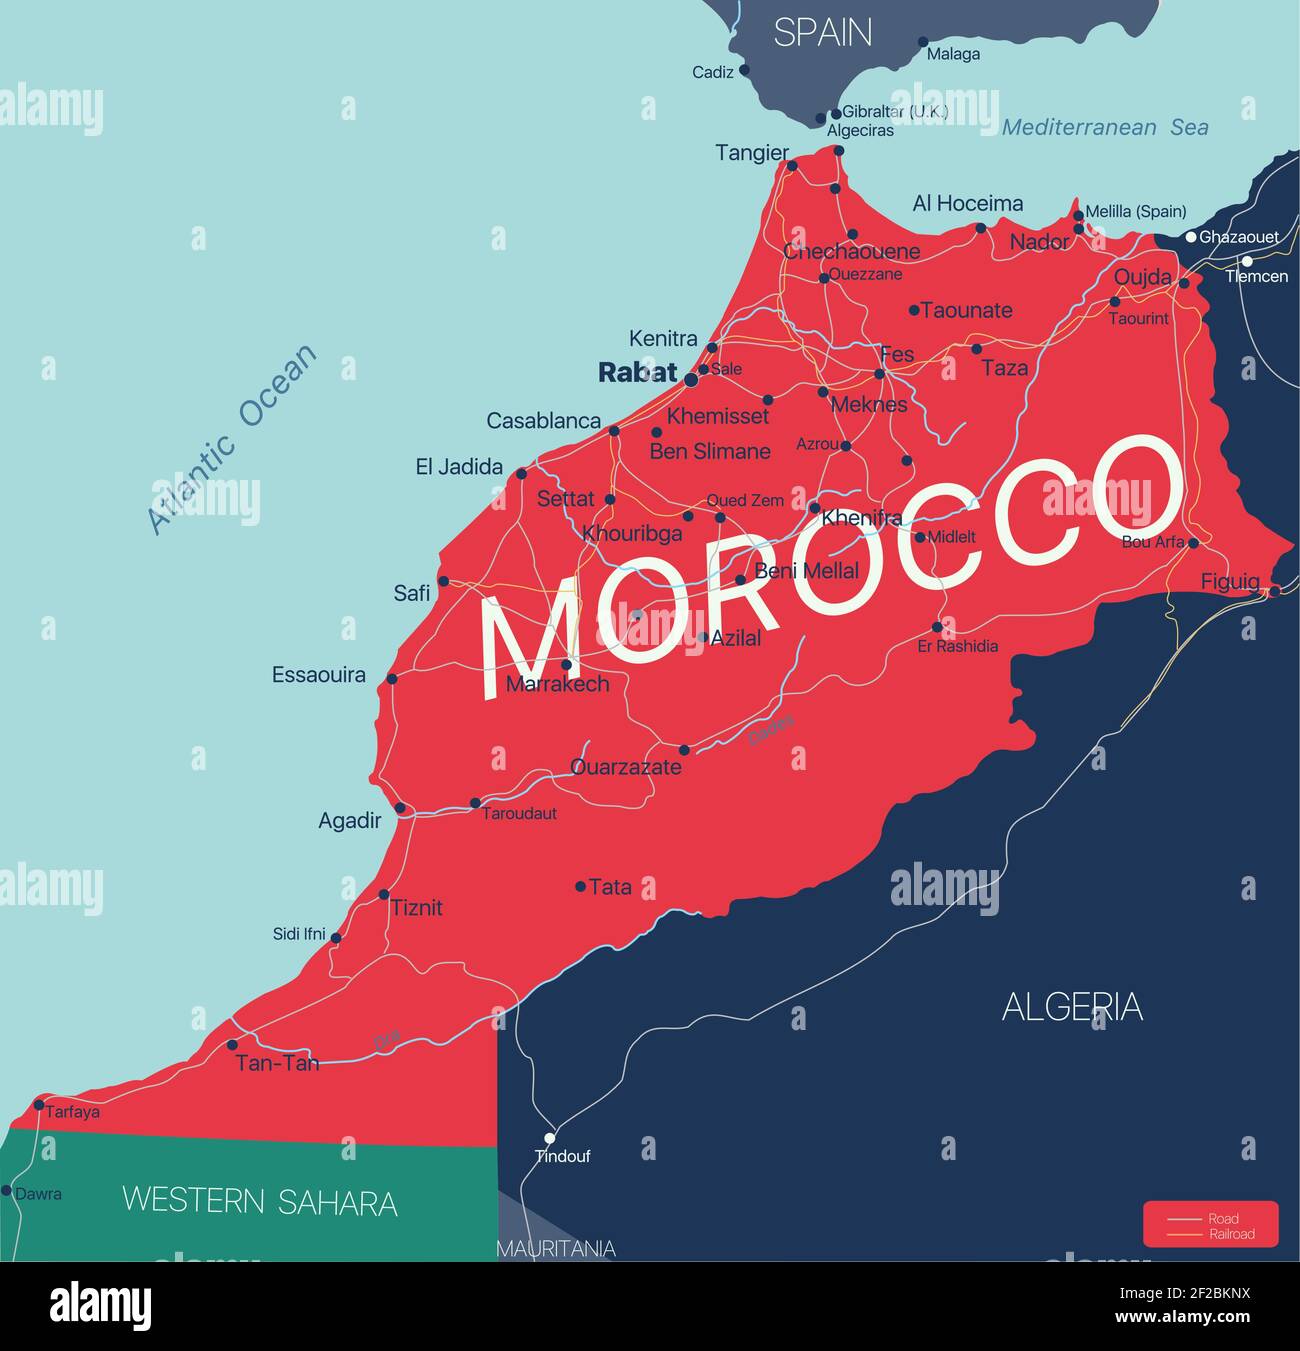 Marokko Land detaillierte editierbare Karte mit Regionen Städte und Städte,  Straßen und Eisenbahnen, geografische Standorte. Vector EPS-10-Datei  Stock-Vektorgrafik - Alamy